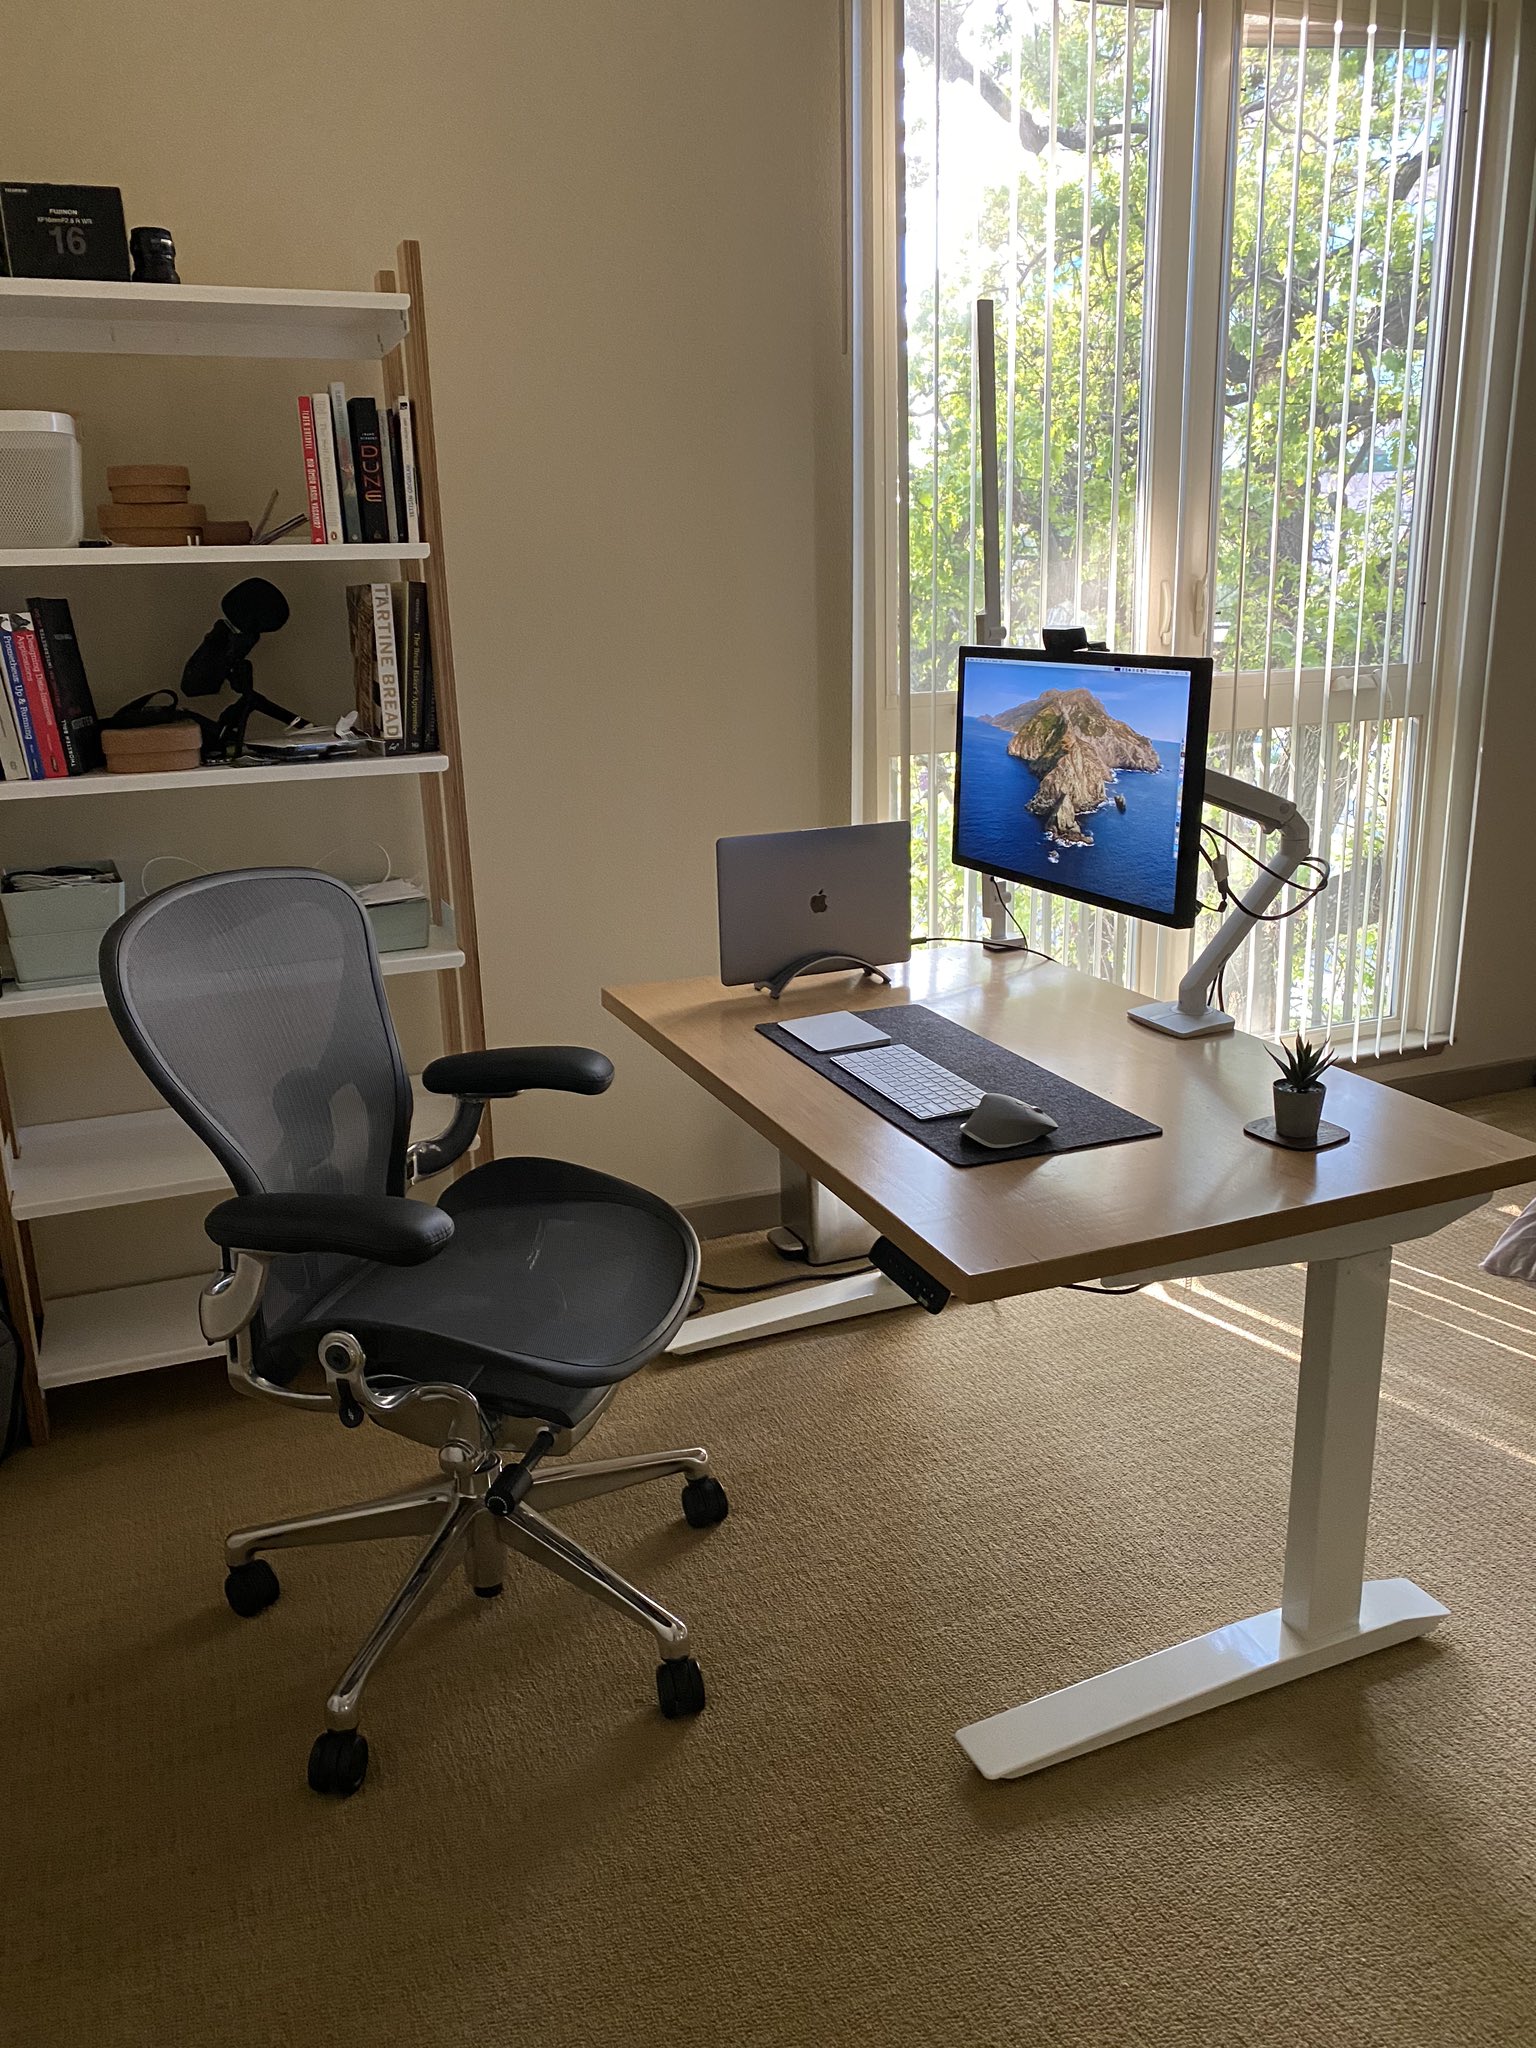 Fatih’s minimal desk setup